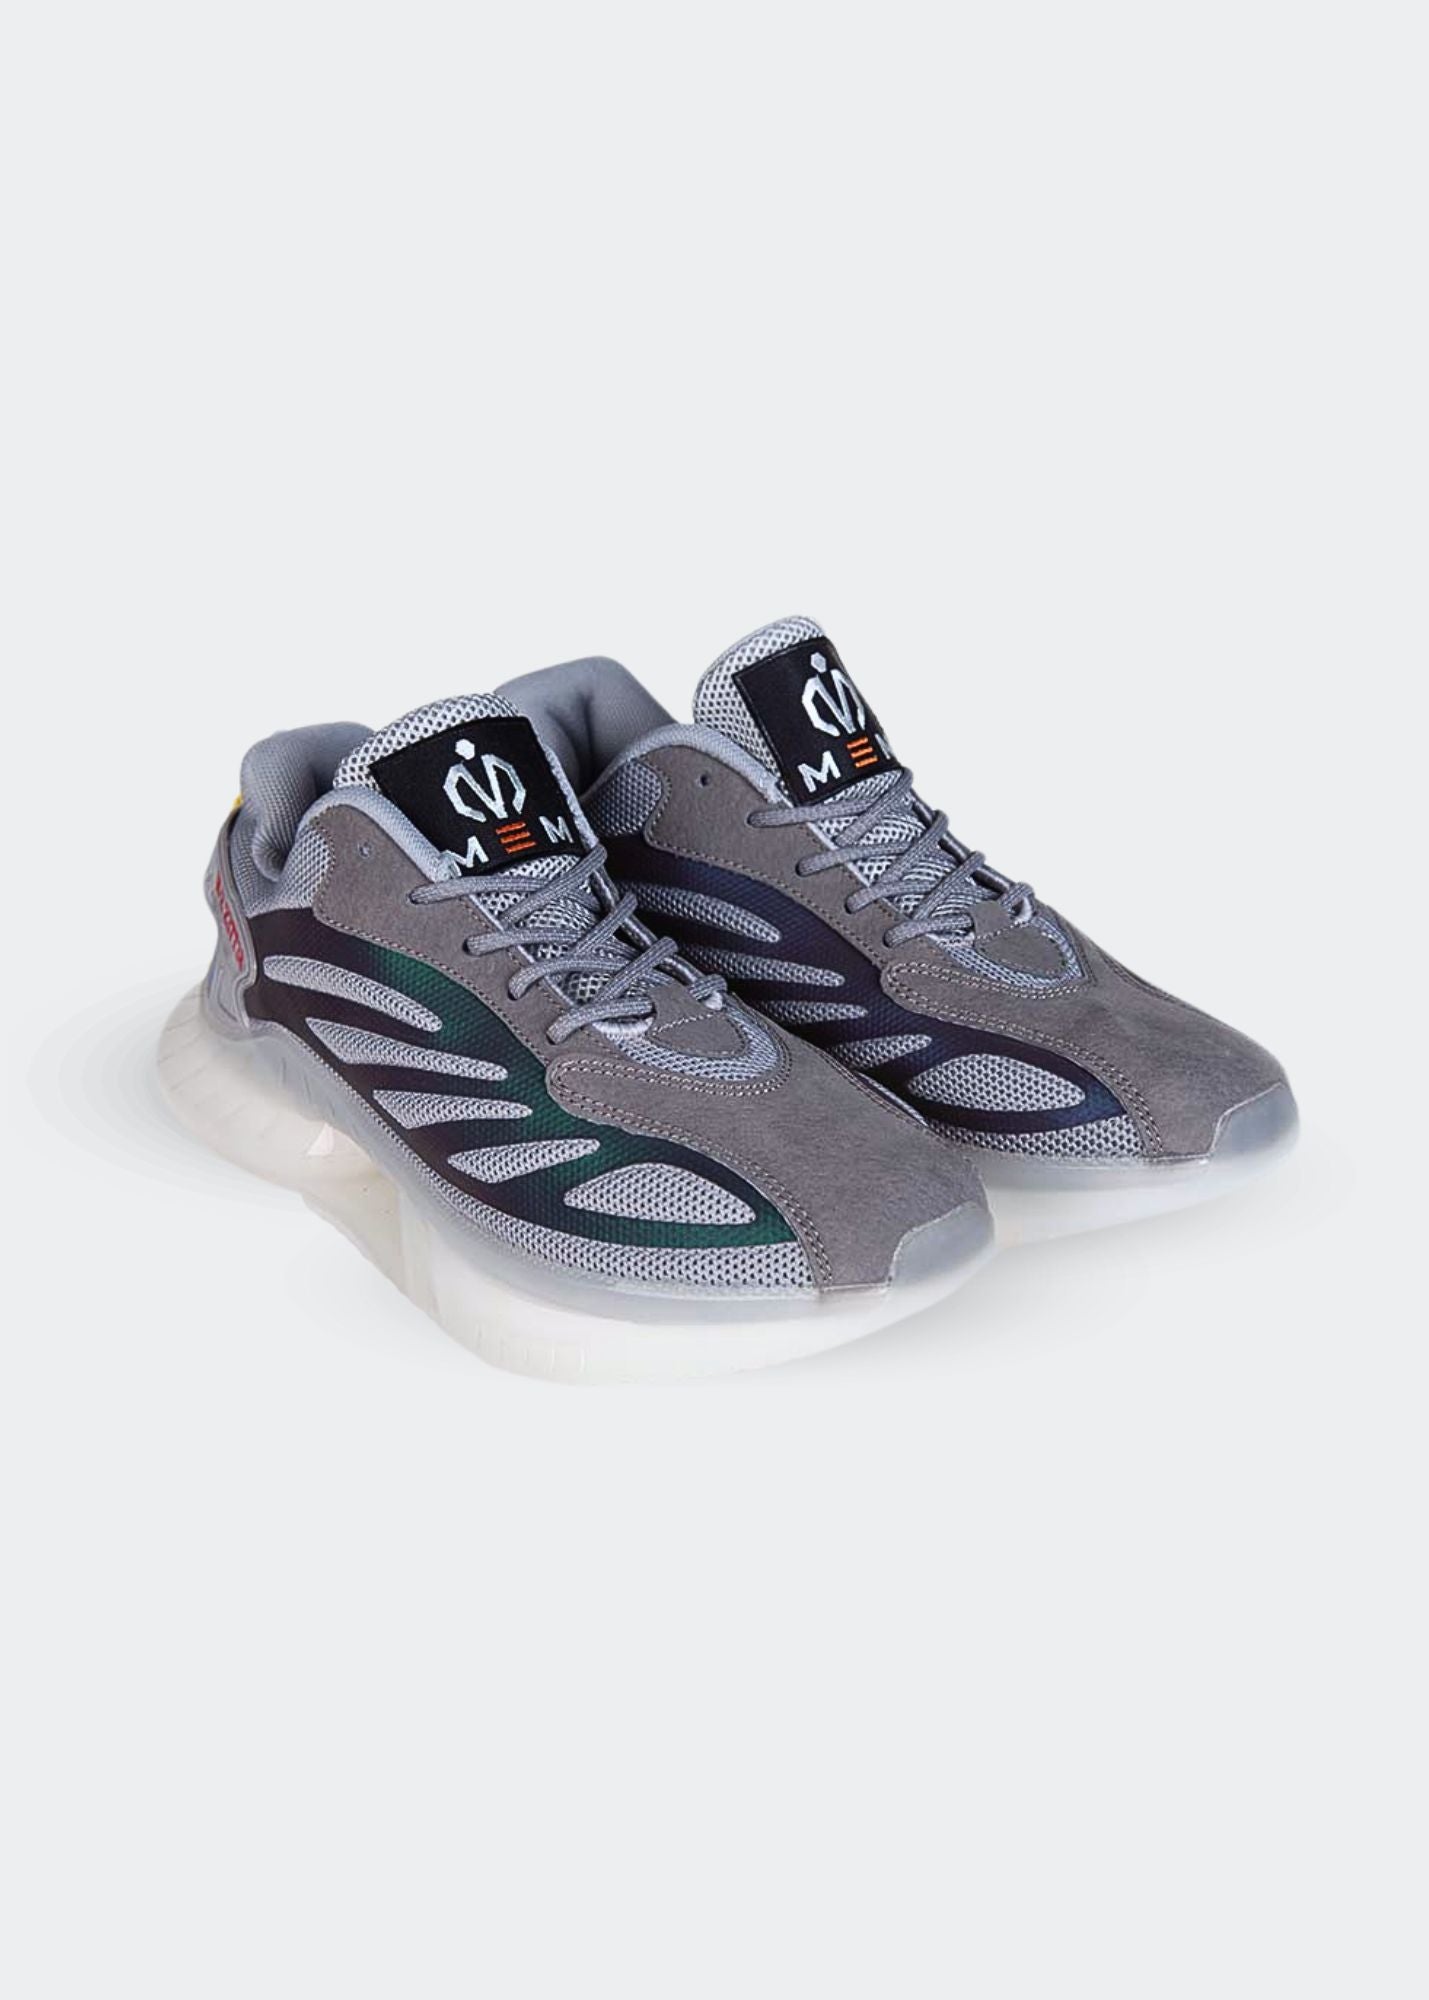 MEM Retro-Reflective Gym Shoes Grey